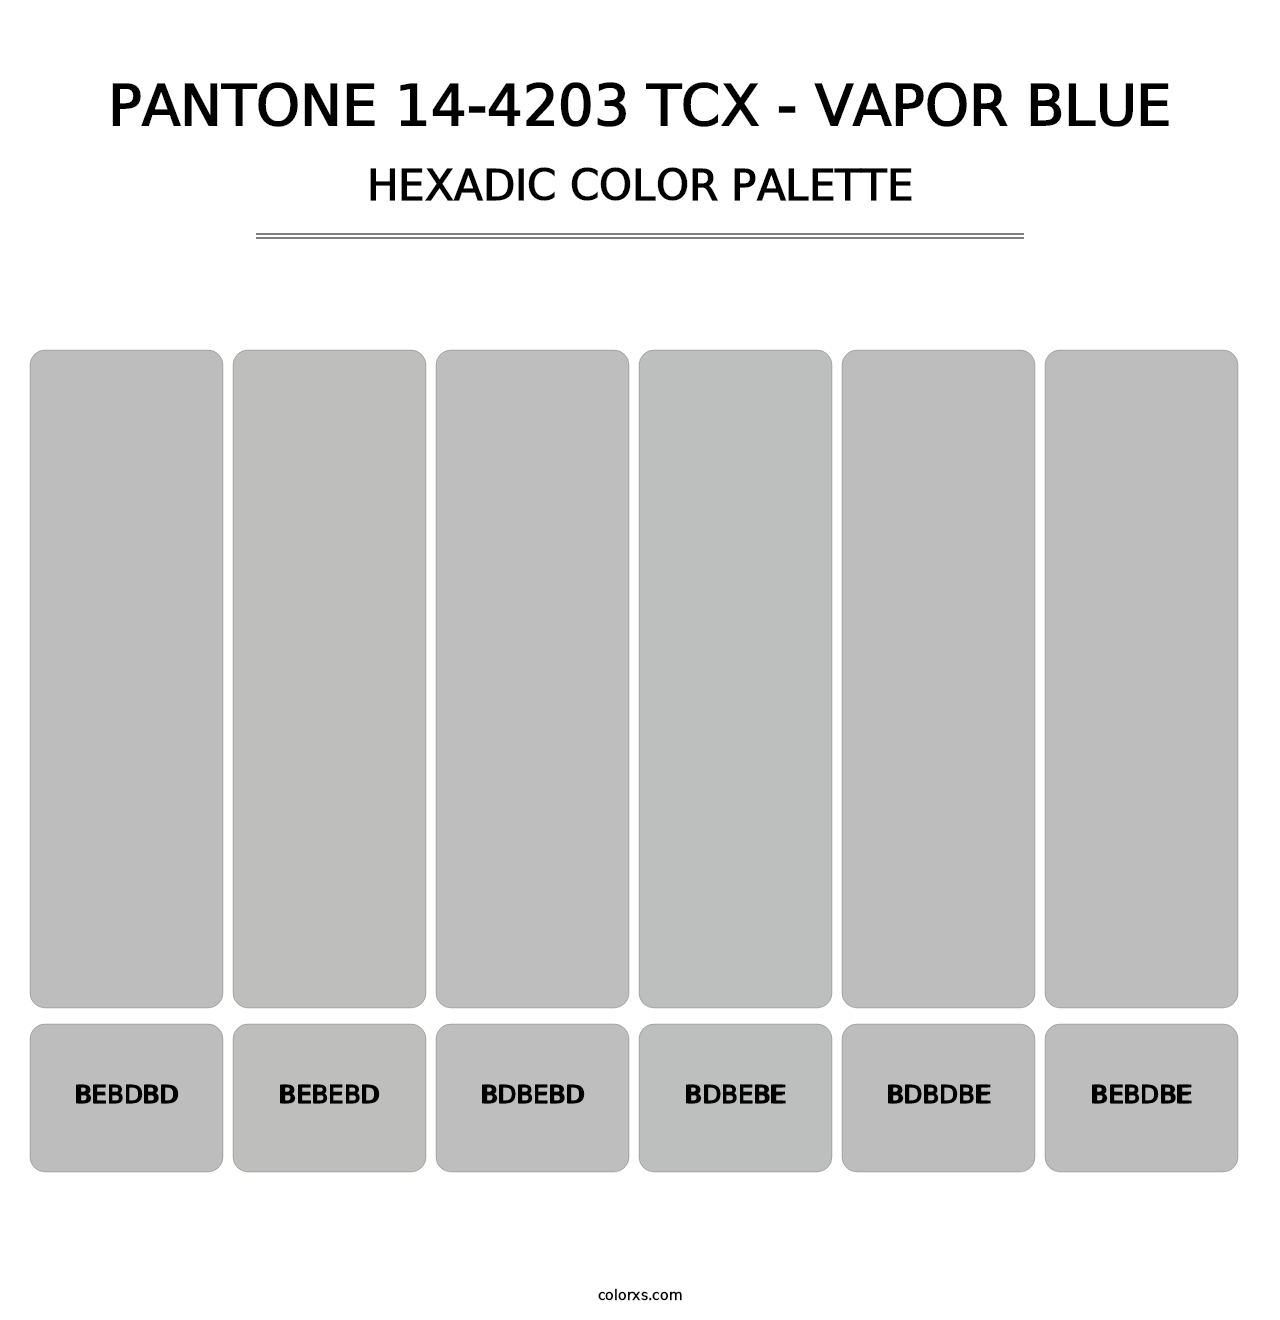 PANTONE 14-4203 TCX - Vapor Blue - Hexadic Color Palette